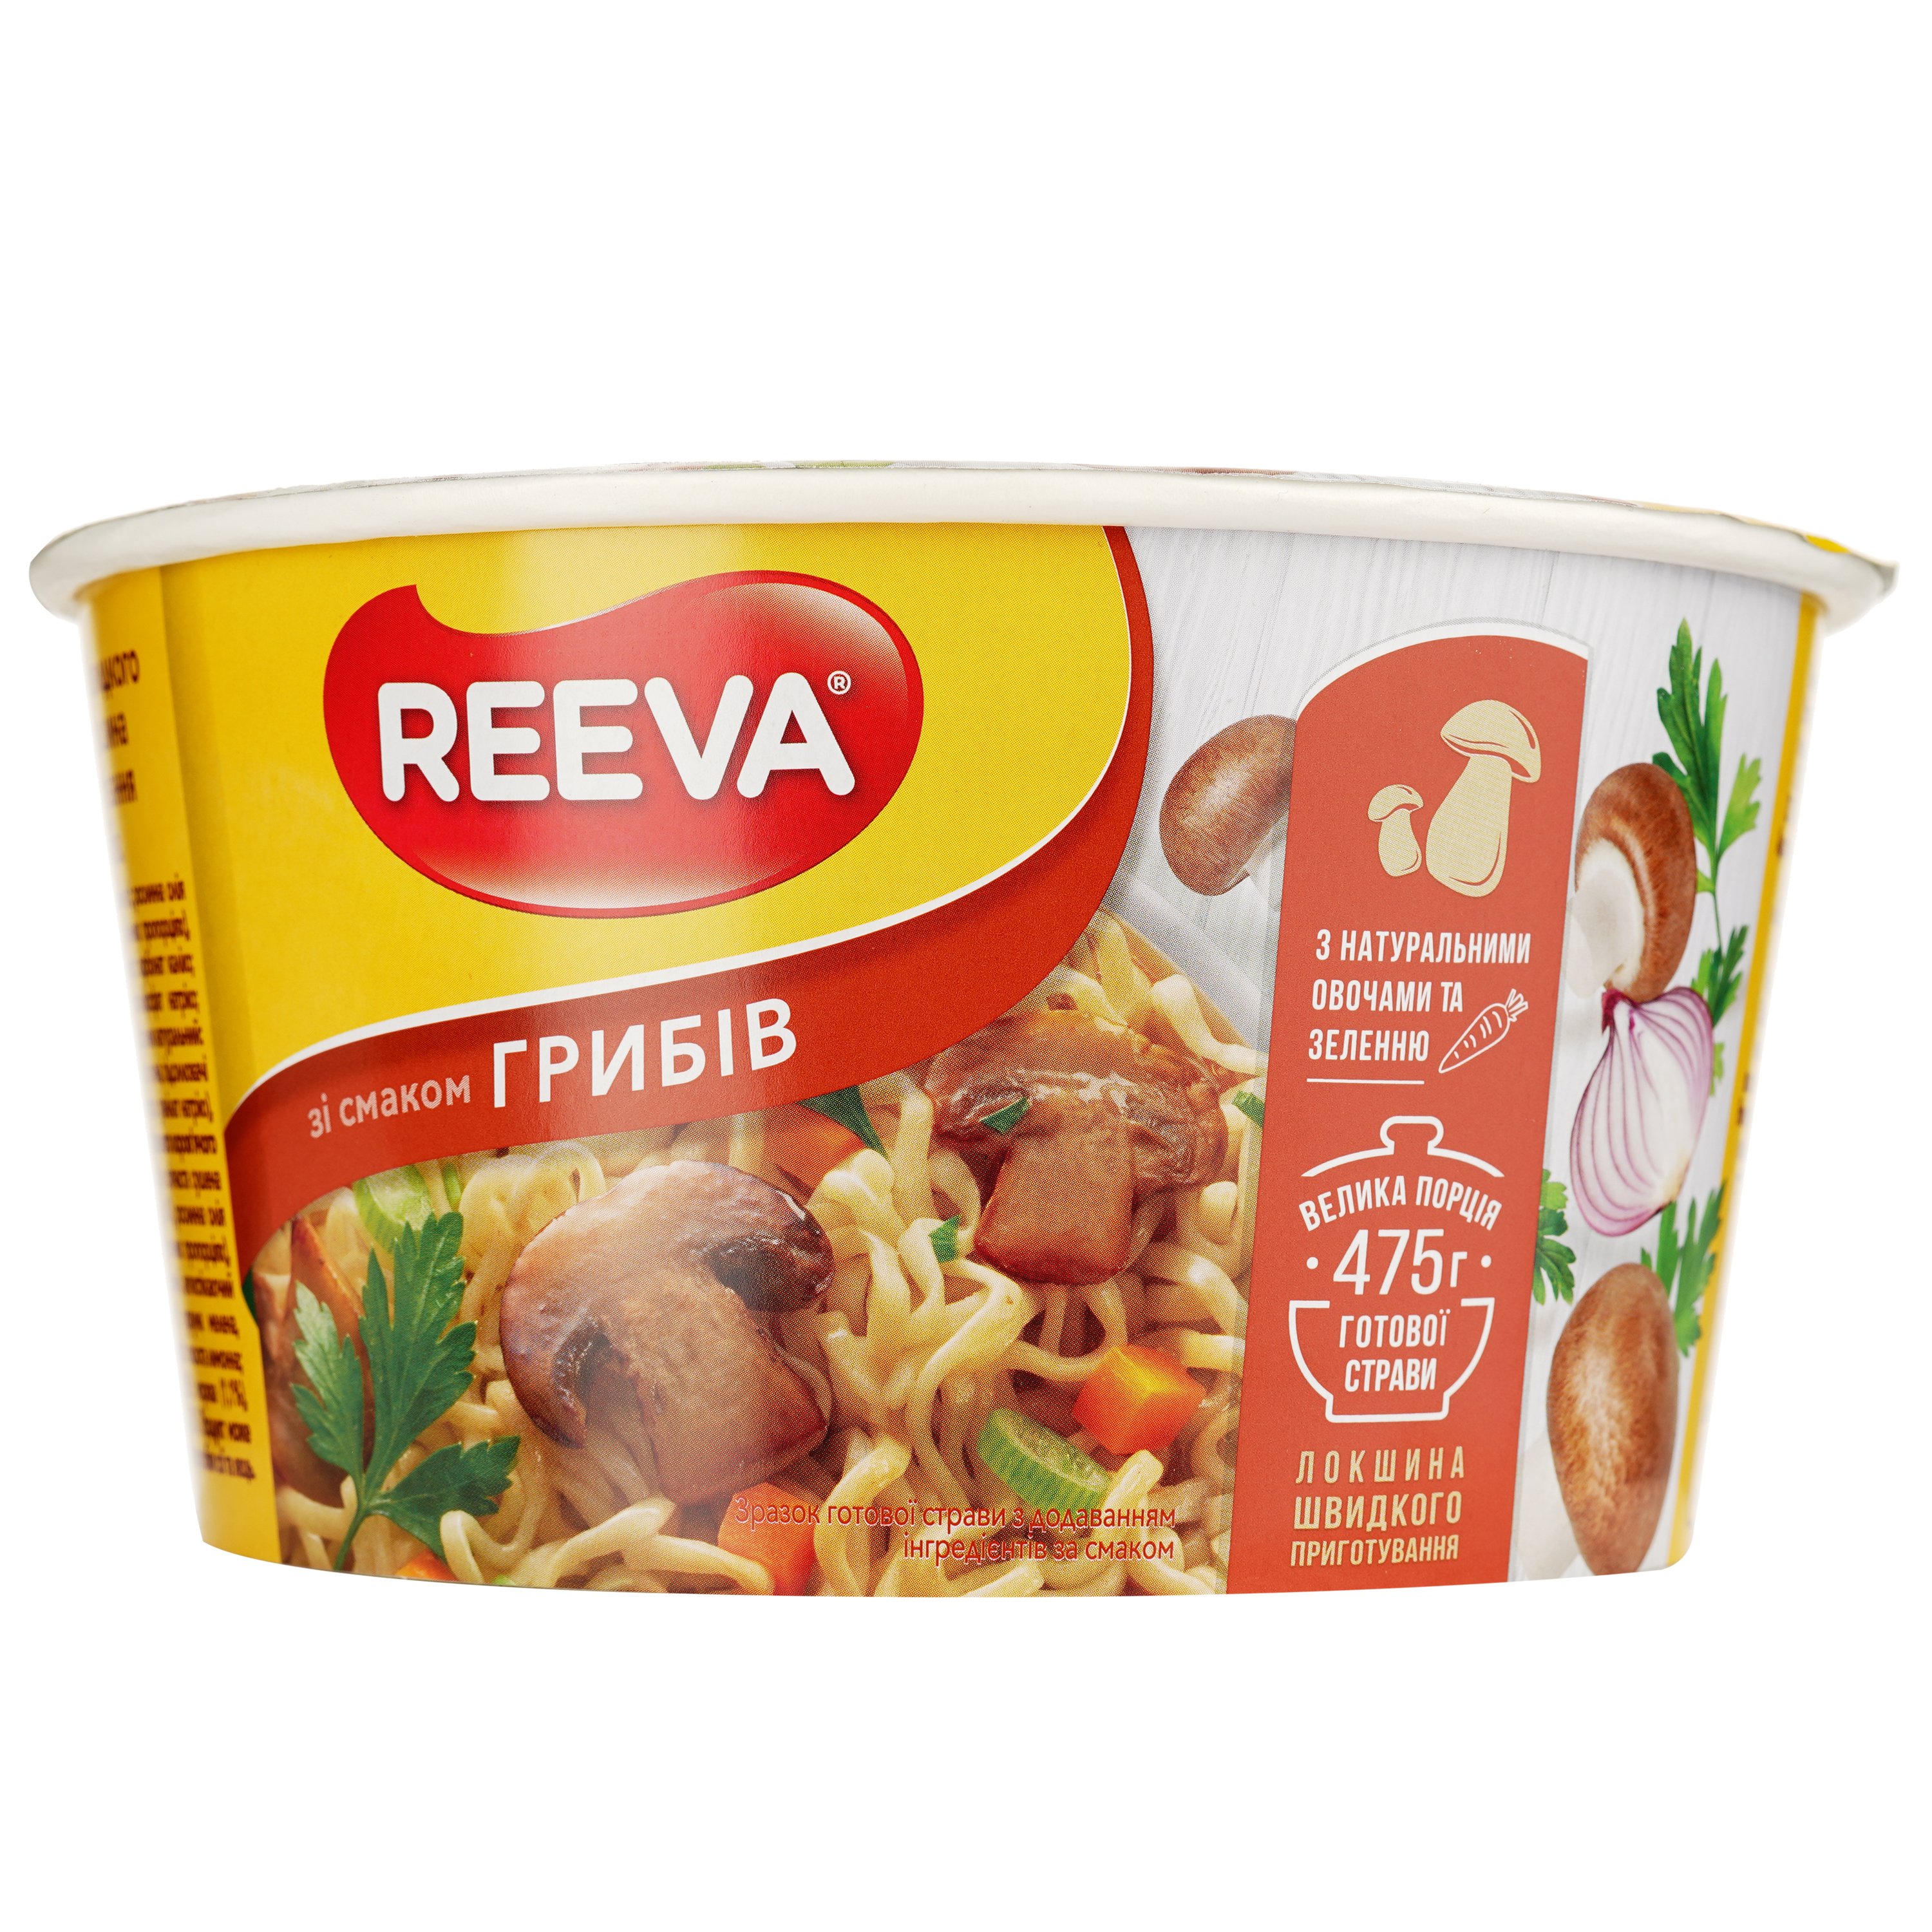 Лапша быстрого приготовления Reeva со вкусом грибов 75 г (923828) - фото 3